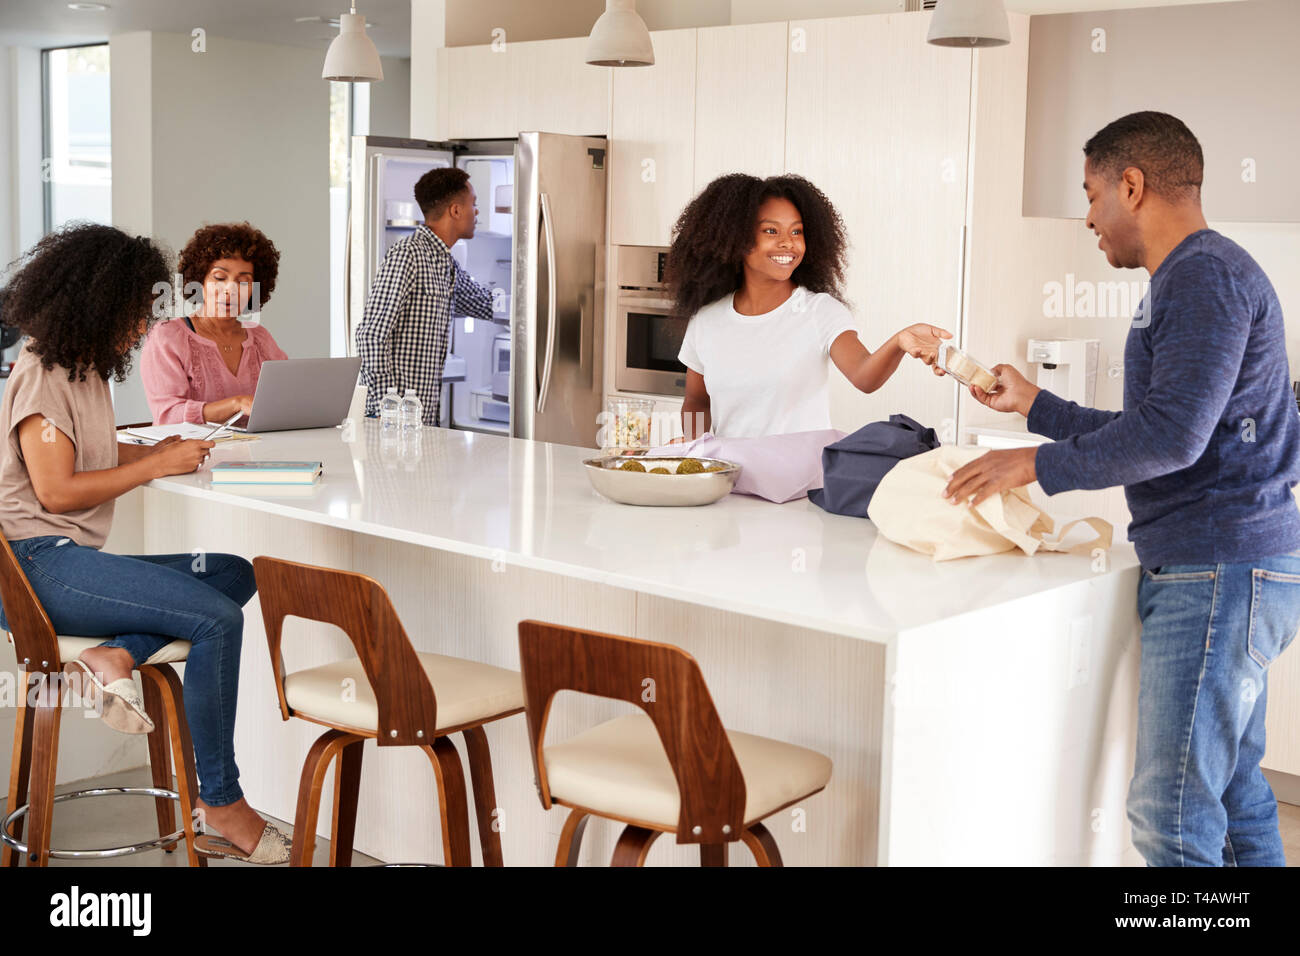 La famille noire de déballer l'épicerie et passer du temps dans leur ensemble de cuisine Banque D'Images